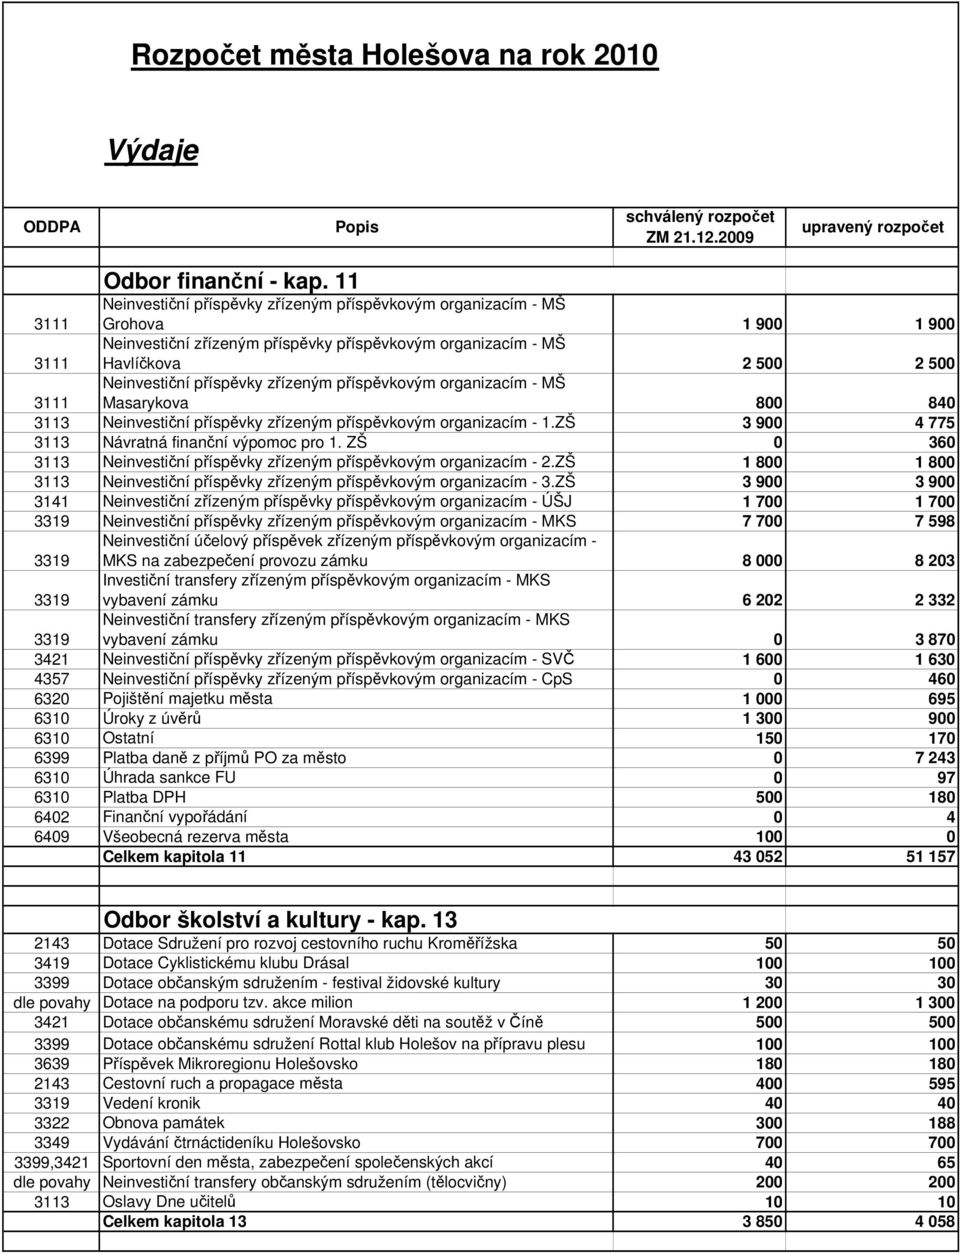 3111 Neinvestiční příspěvky zřízeným příspěvkovým organizacím - MŠ Masarykova 800 840 3113 Neinvestiční příspěvky zřízeným příspěvkovým organizacím - 1.